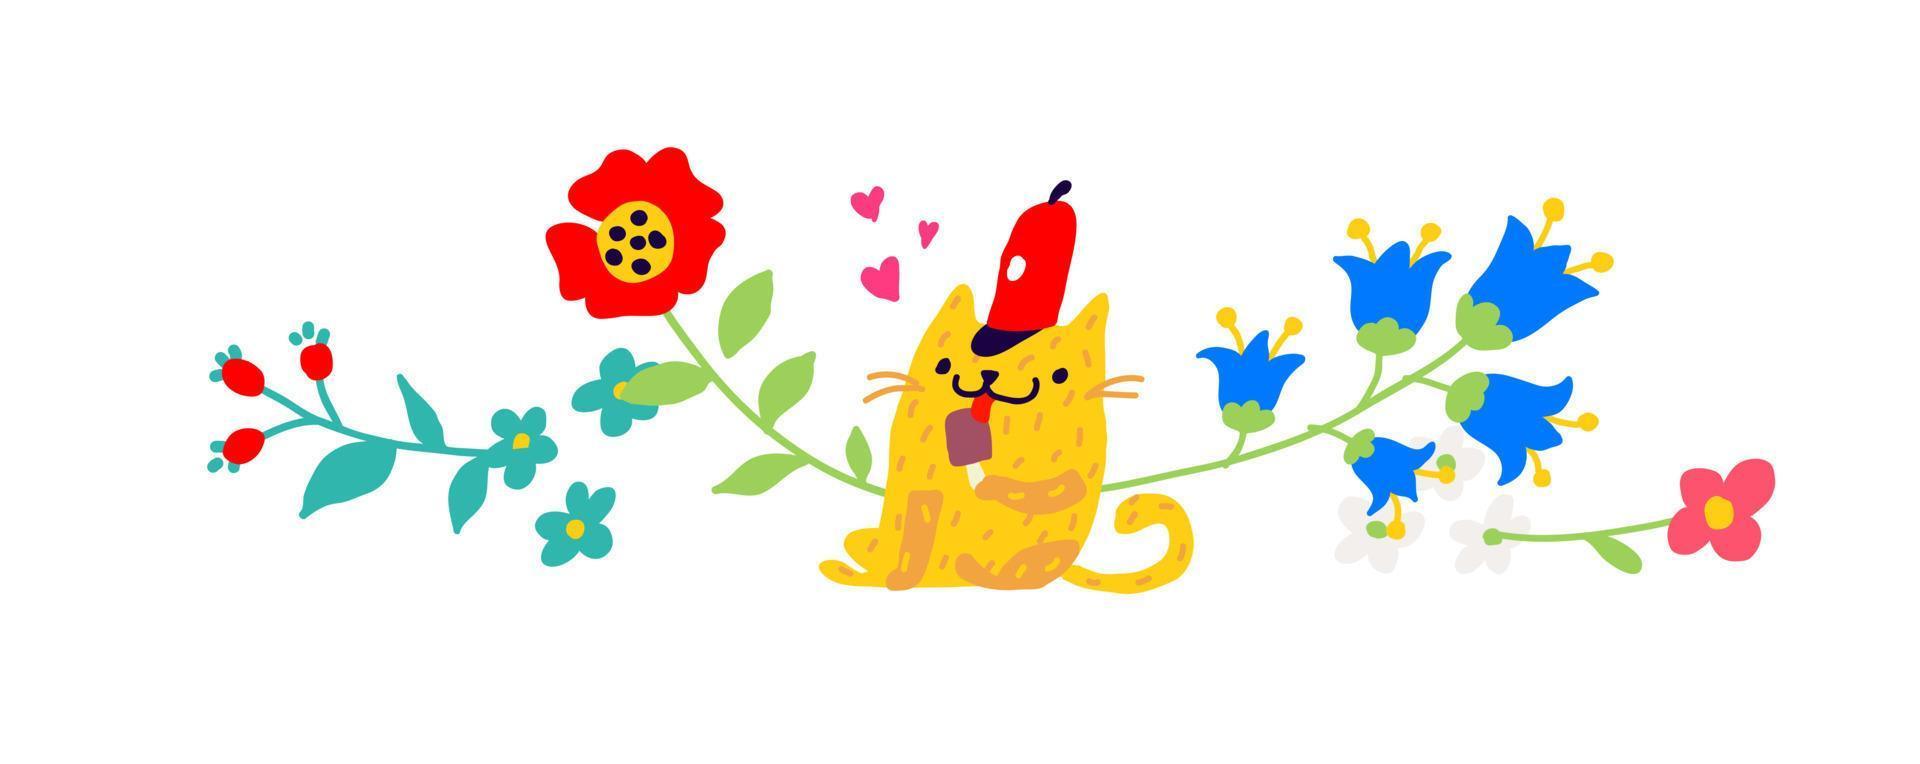 illustration av en gul katt i en röd mössa med en glass. vektor. barns tecknade film, doodle stil. illustration för vykort eller grattis. institutioner för barn. blommor prydnad. vektor